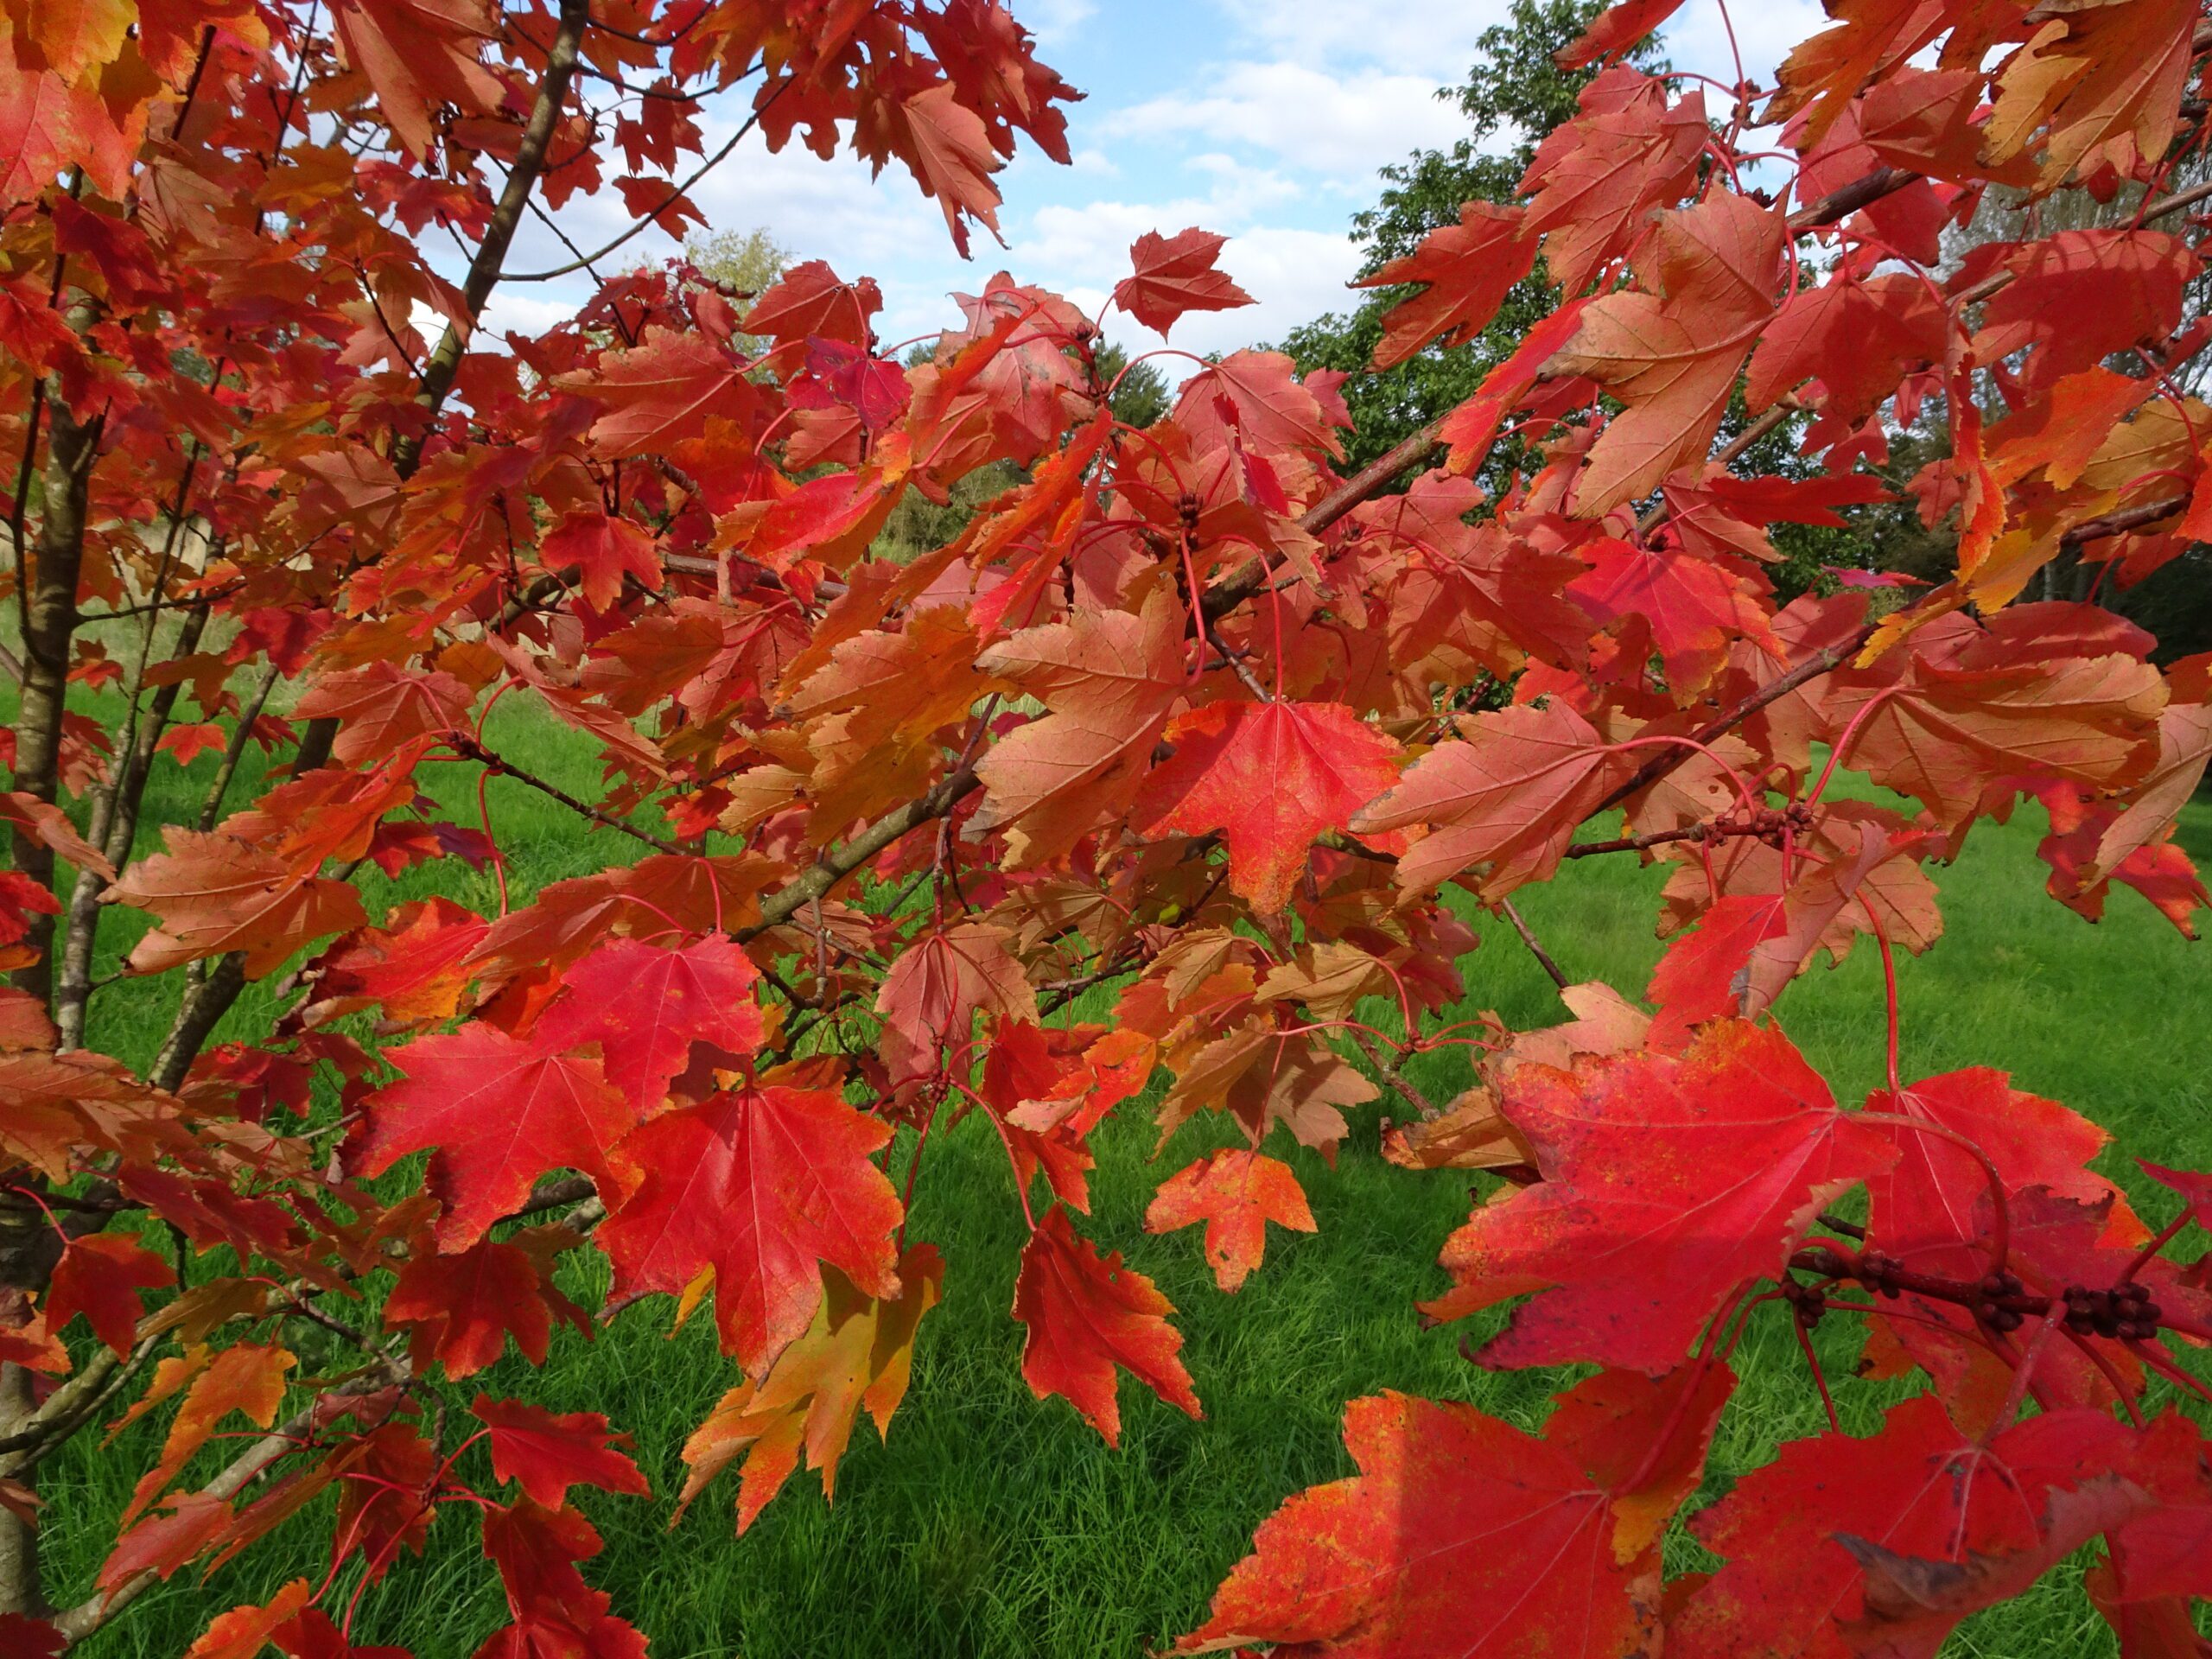 Acer rubrum Red Maple leaves. Credit Kevin Hobbs